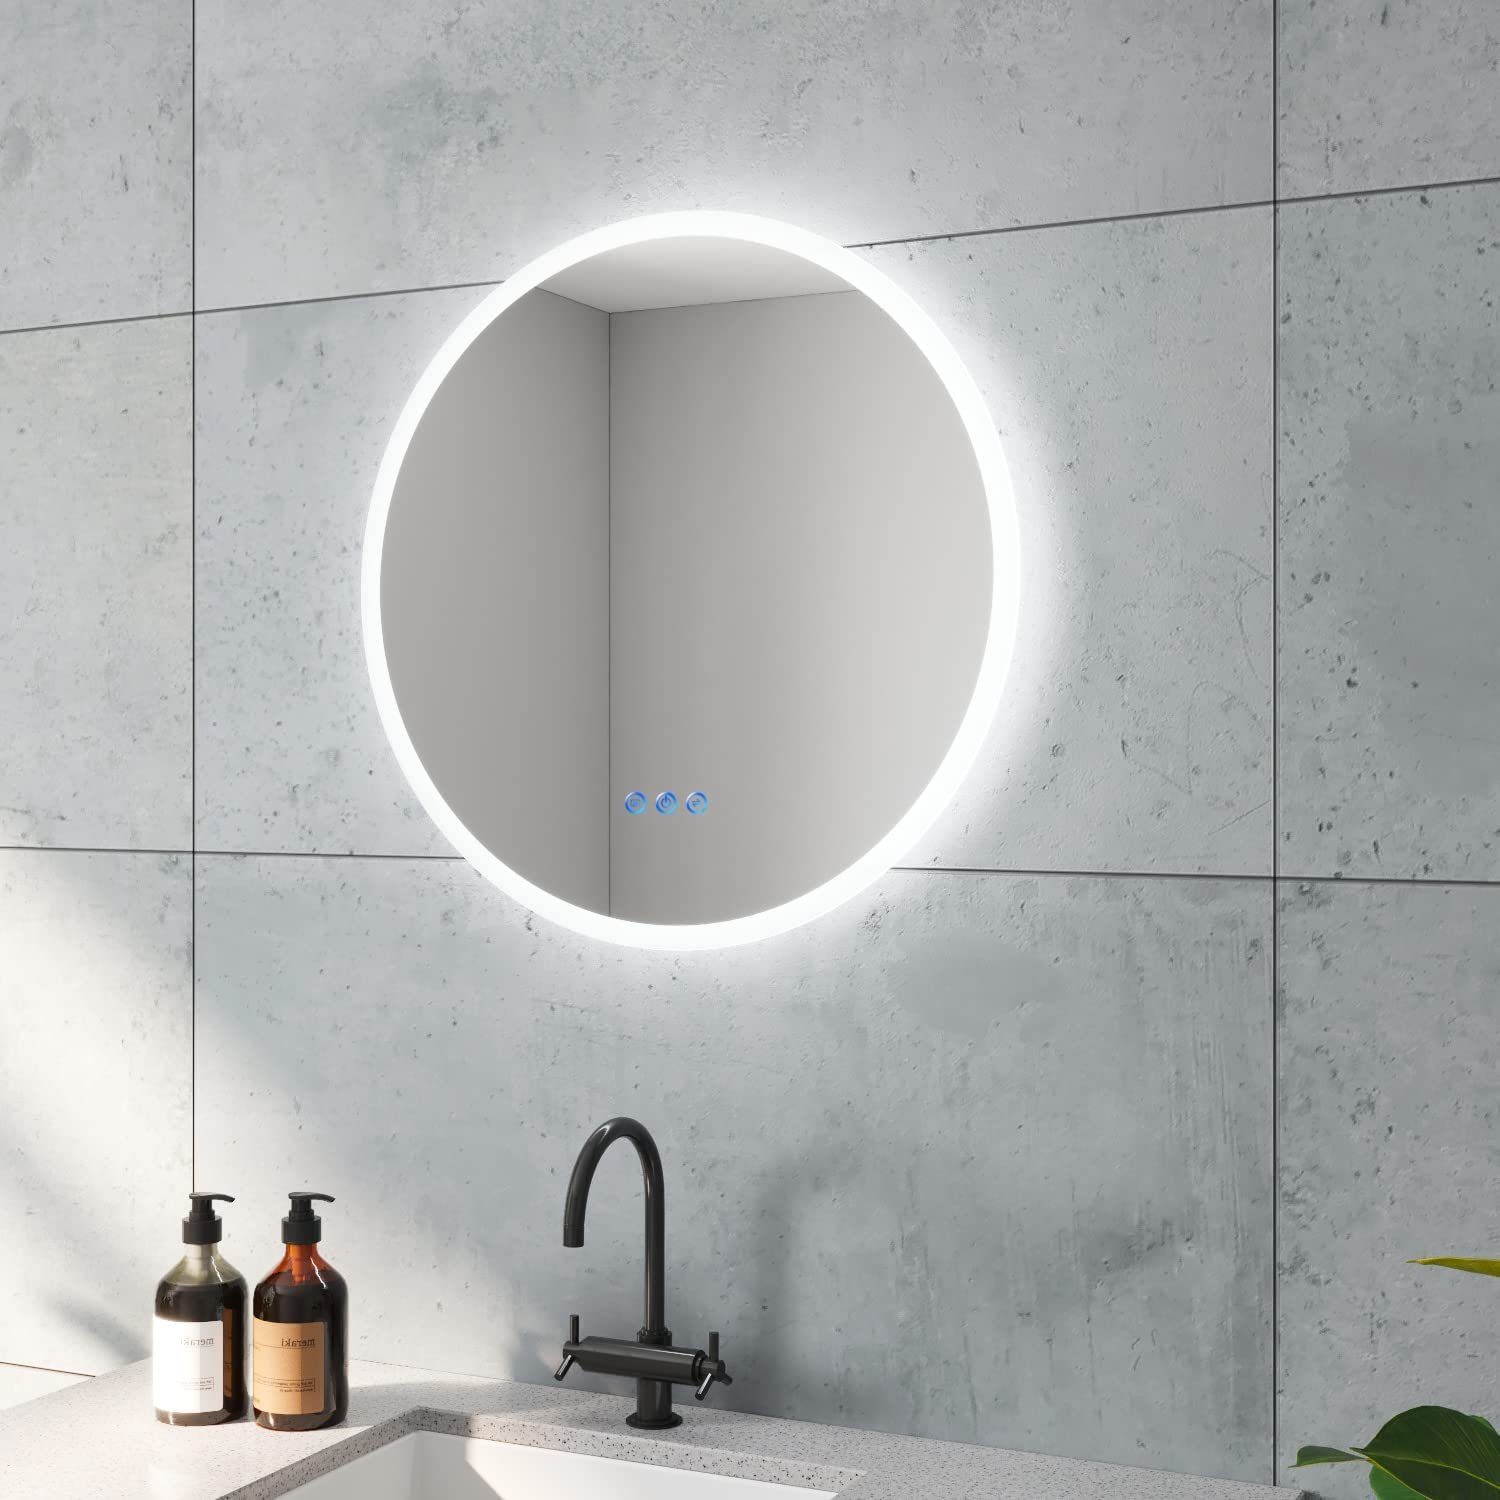 AQUALAVOS Badspiegel Rund Badspiegel mit LED Beleuchtung Dimmbar Beschlagfrei Wandspiegel, 6400K Kaltweiß & Warmweiß 3000K, Touchschalter, Energiesparend